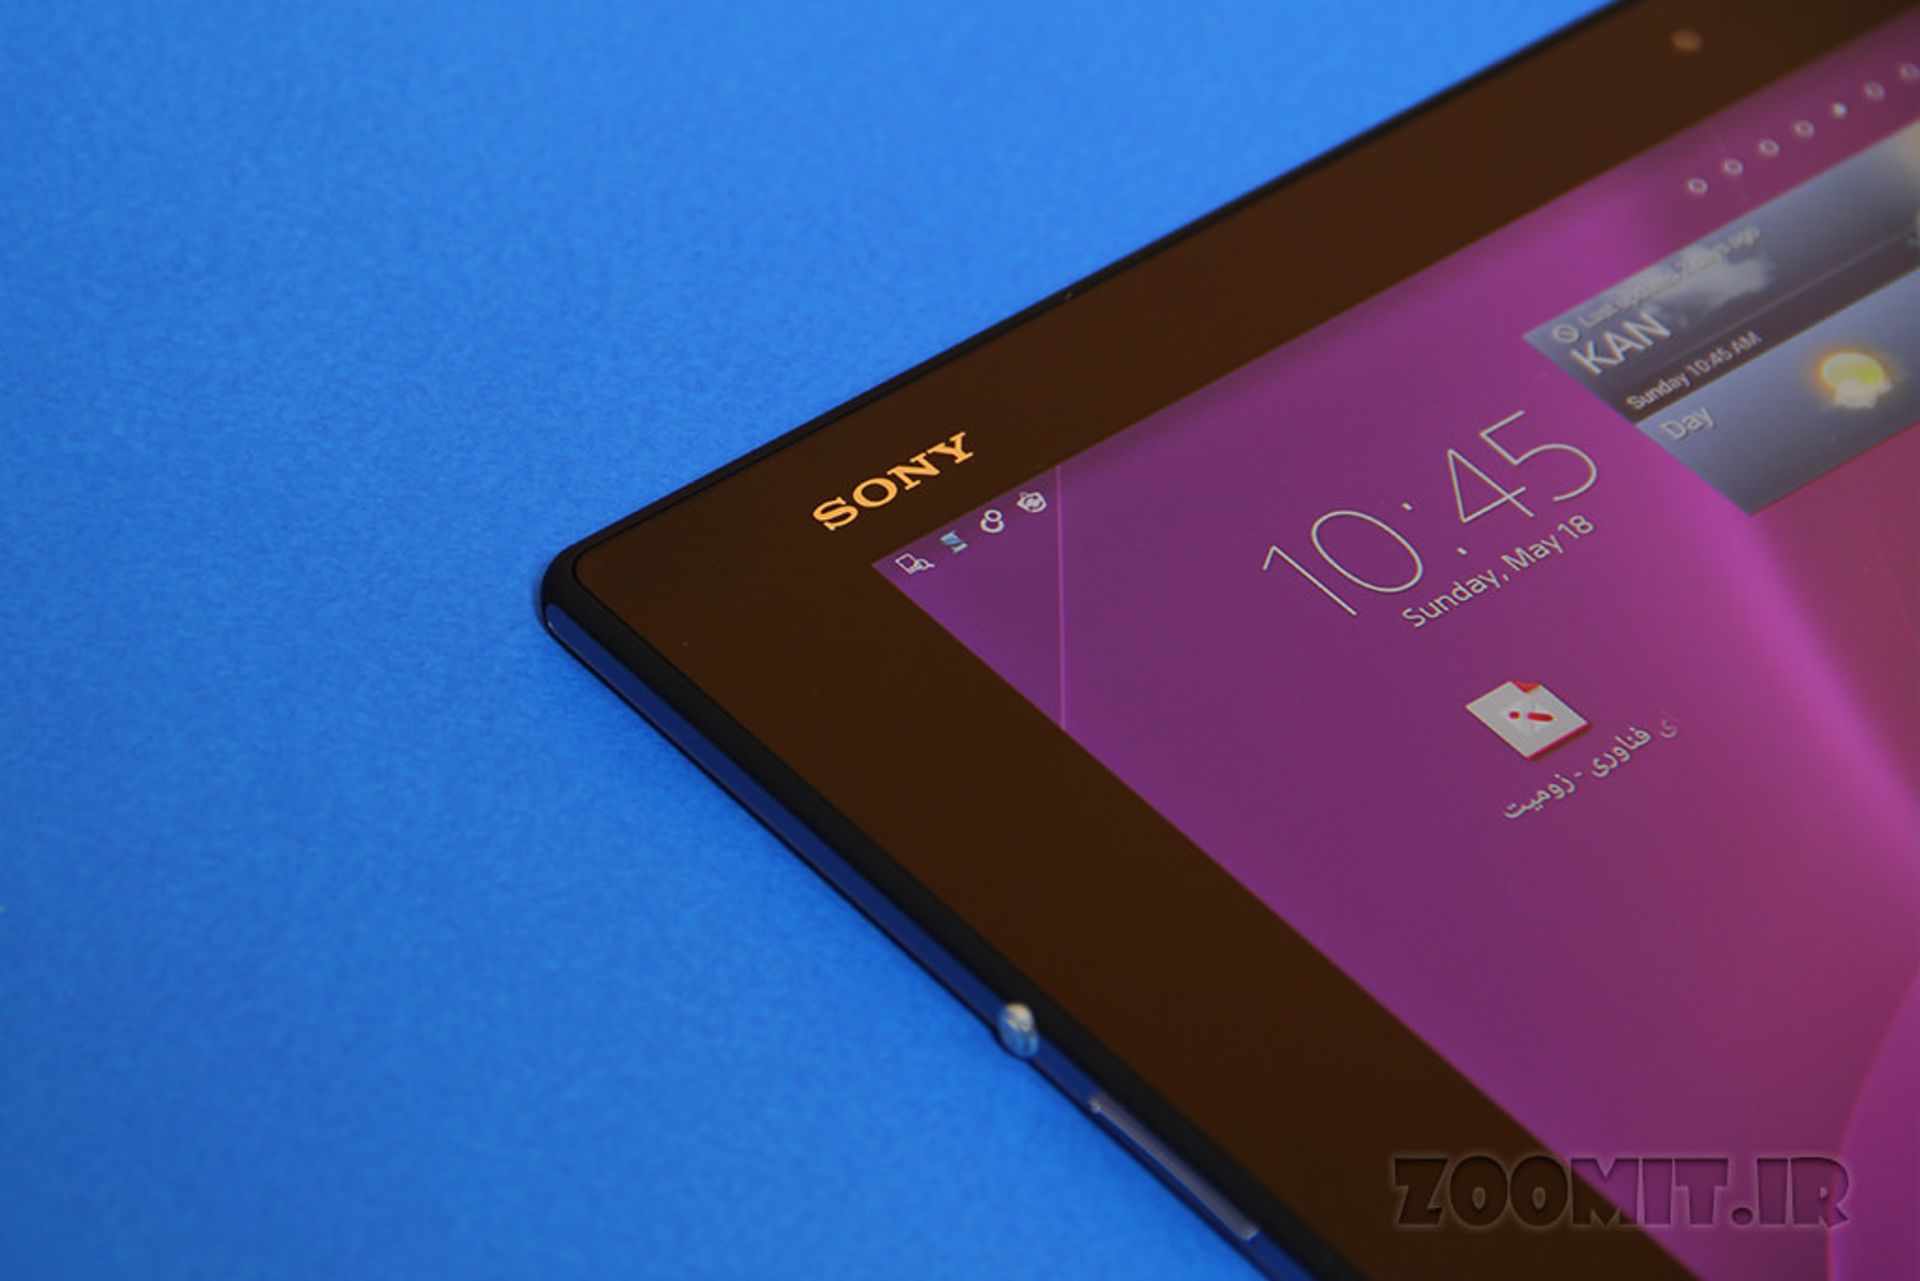 بررسی اکسپریا زد 2 تبلت سونی (Sony Xperia Z2 Tablet)